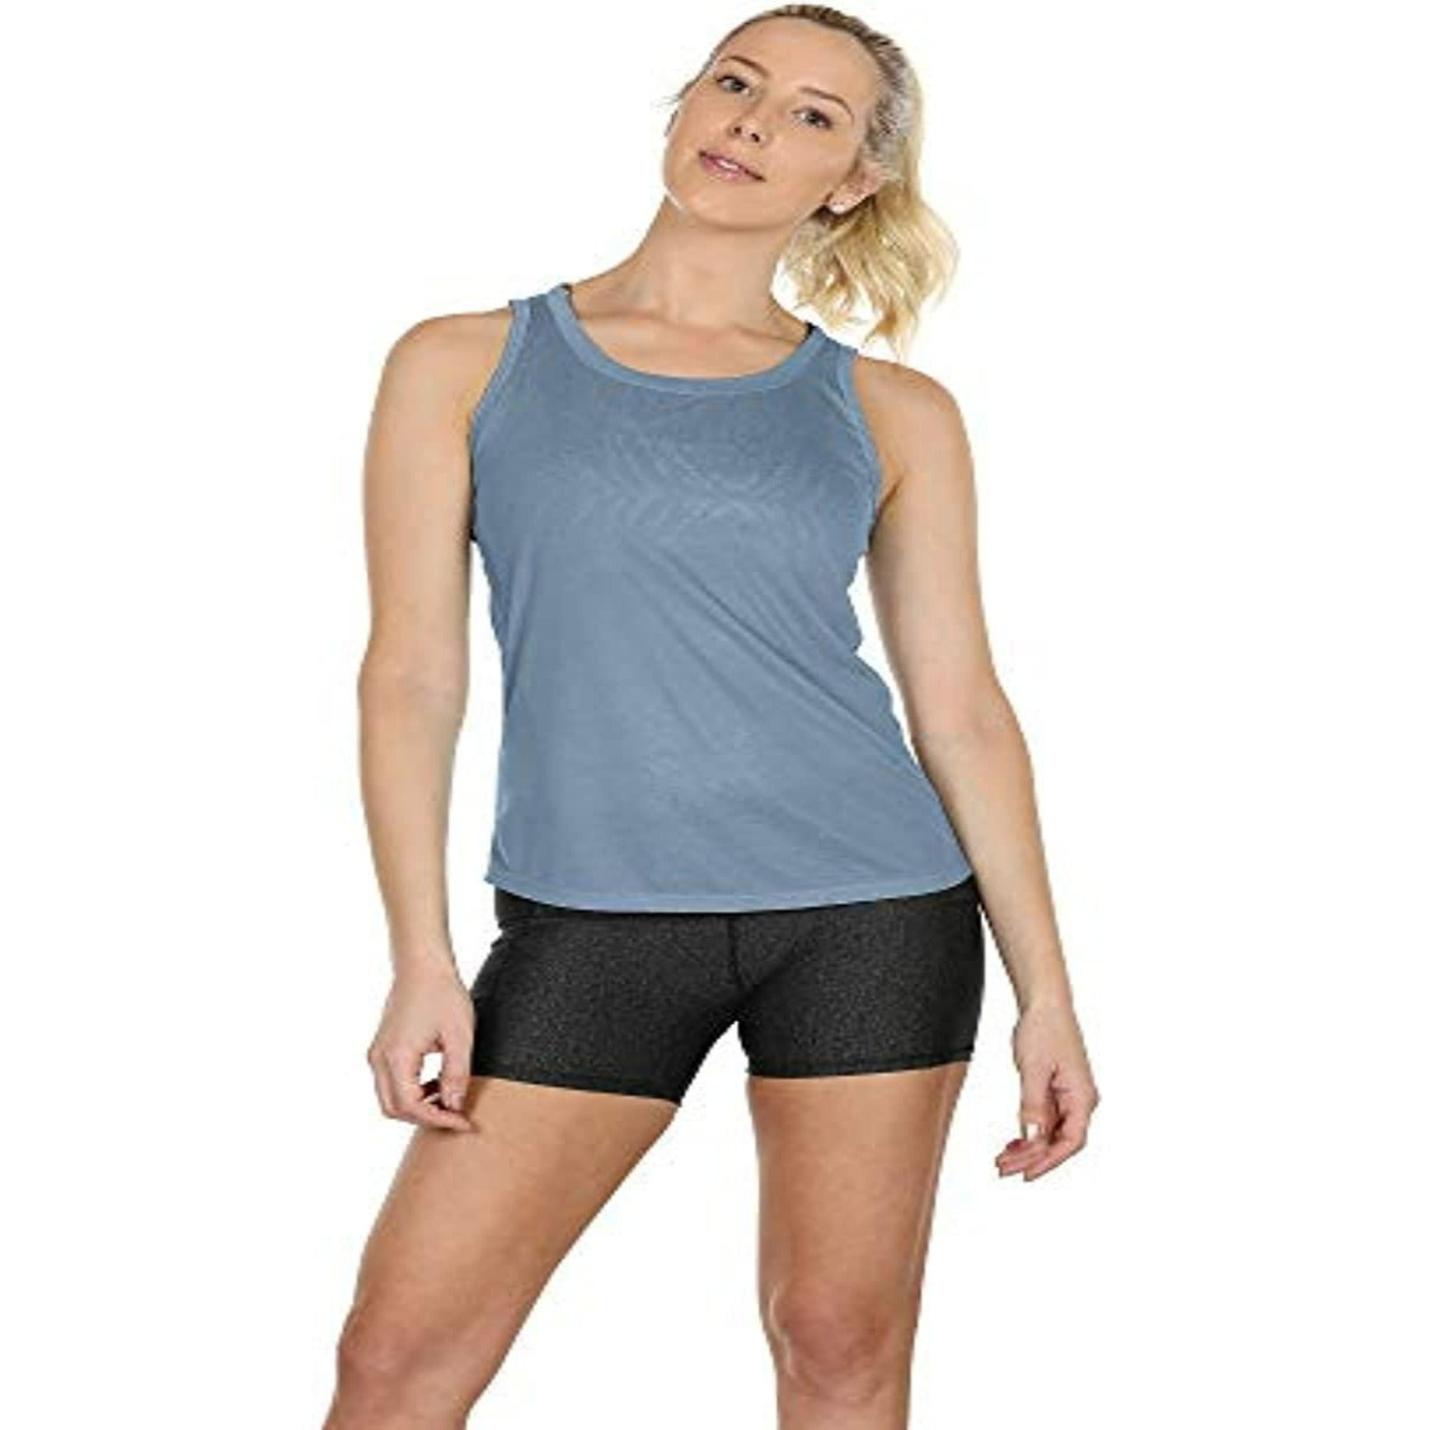 Dames sportshirts met open rug voor actieve workouts